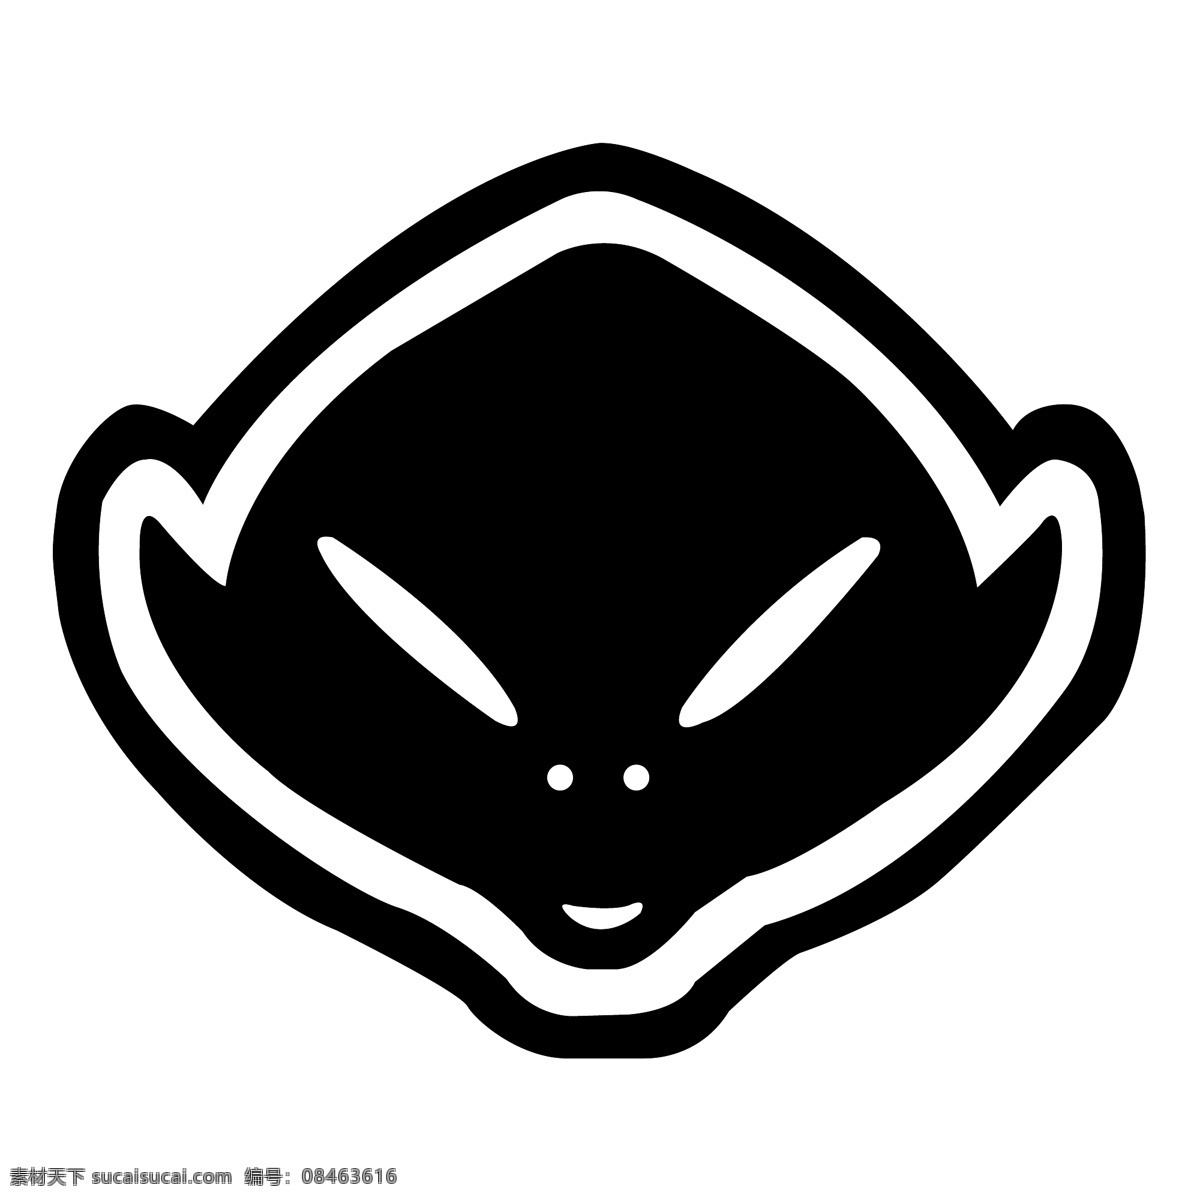 ufo塑料0 ufo 塑料 ufo塑料 矢量 公司 标志 整形 自由 自由的ufo 图像 免费 ufo向量 艺术 ufo免费 建筑家居